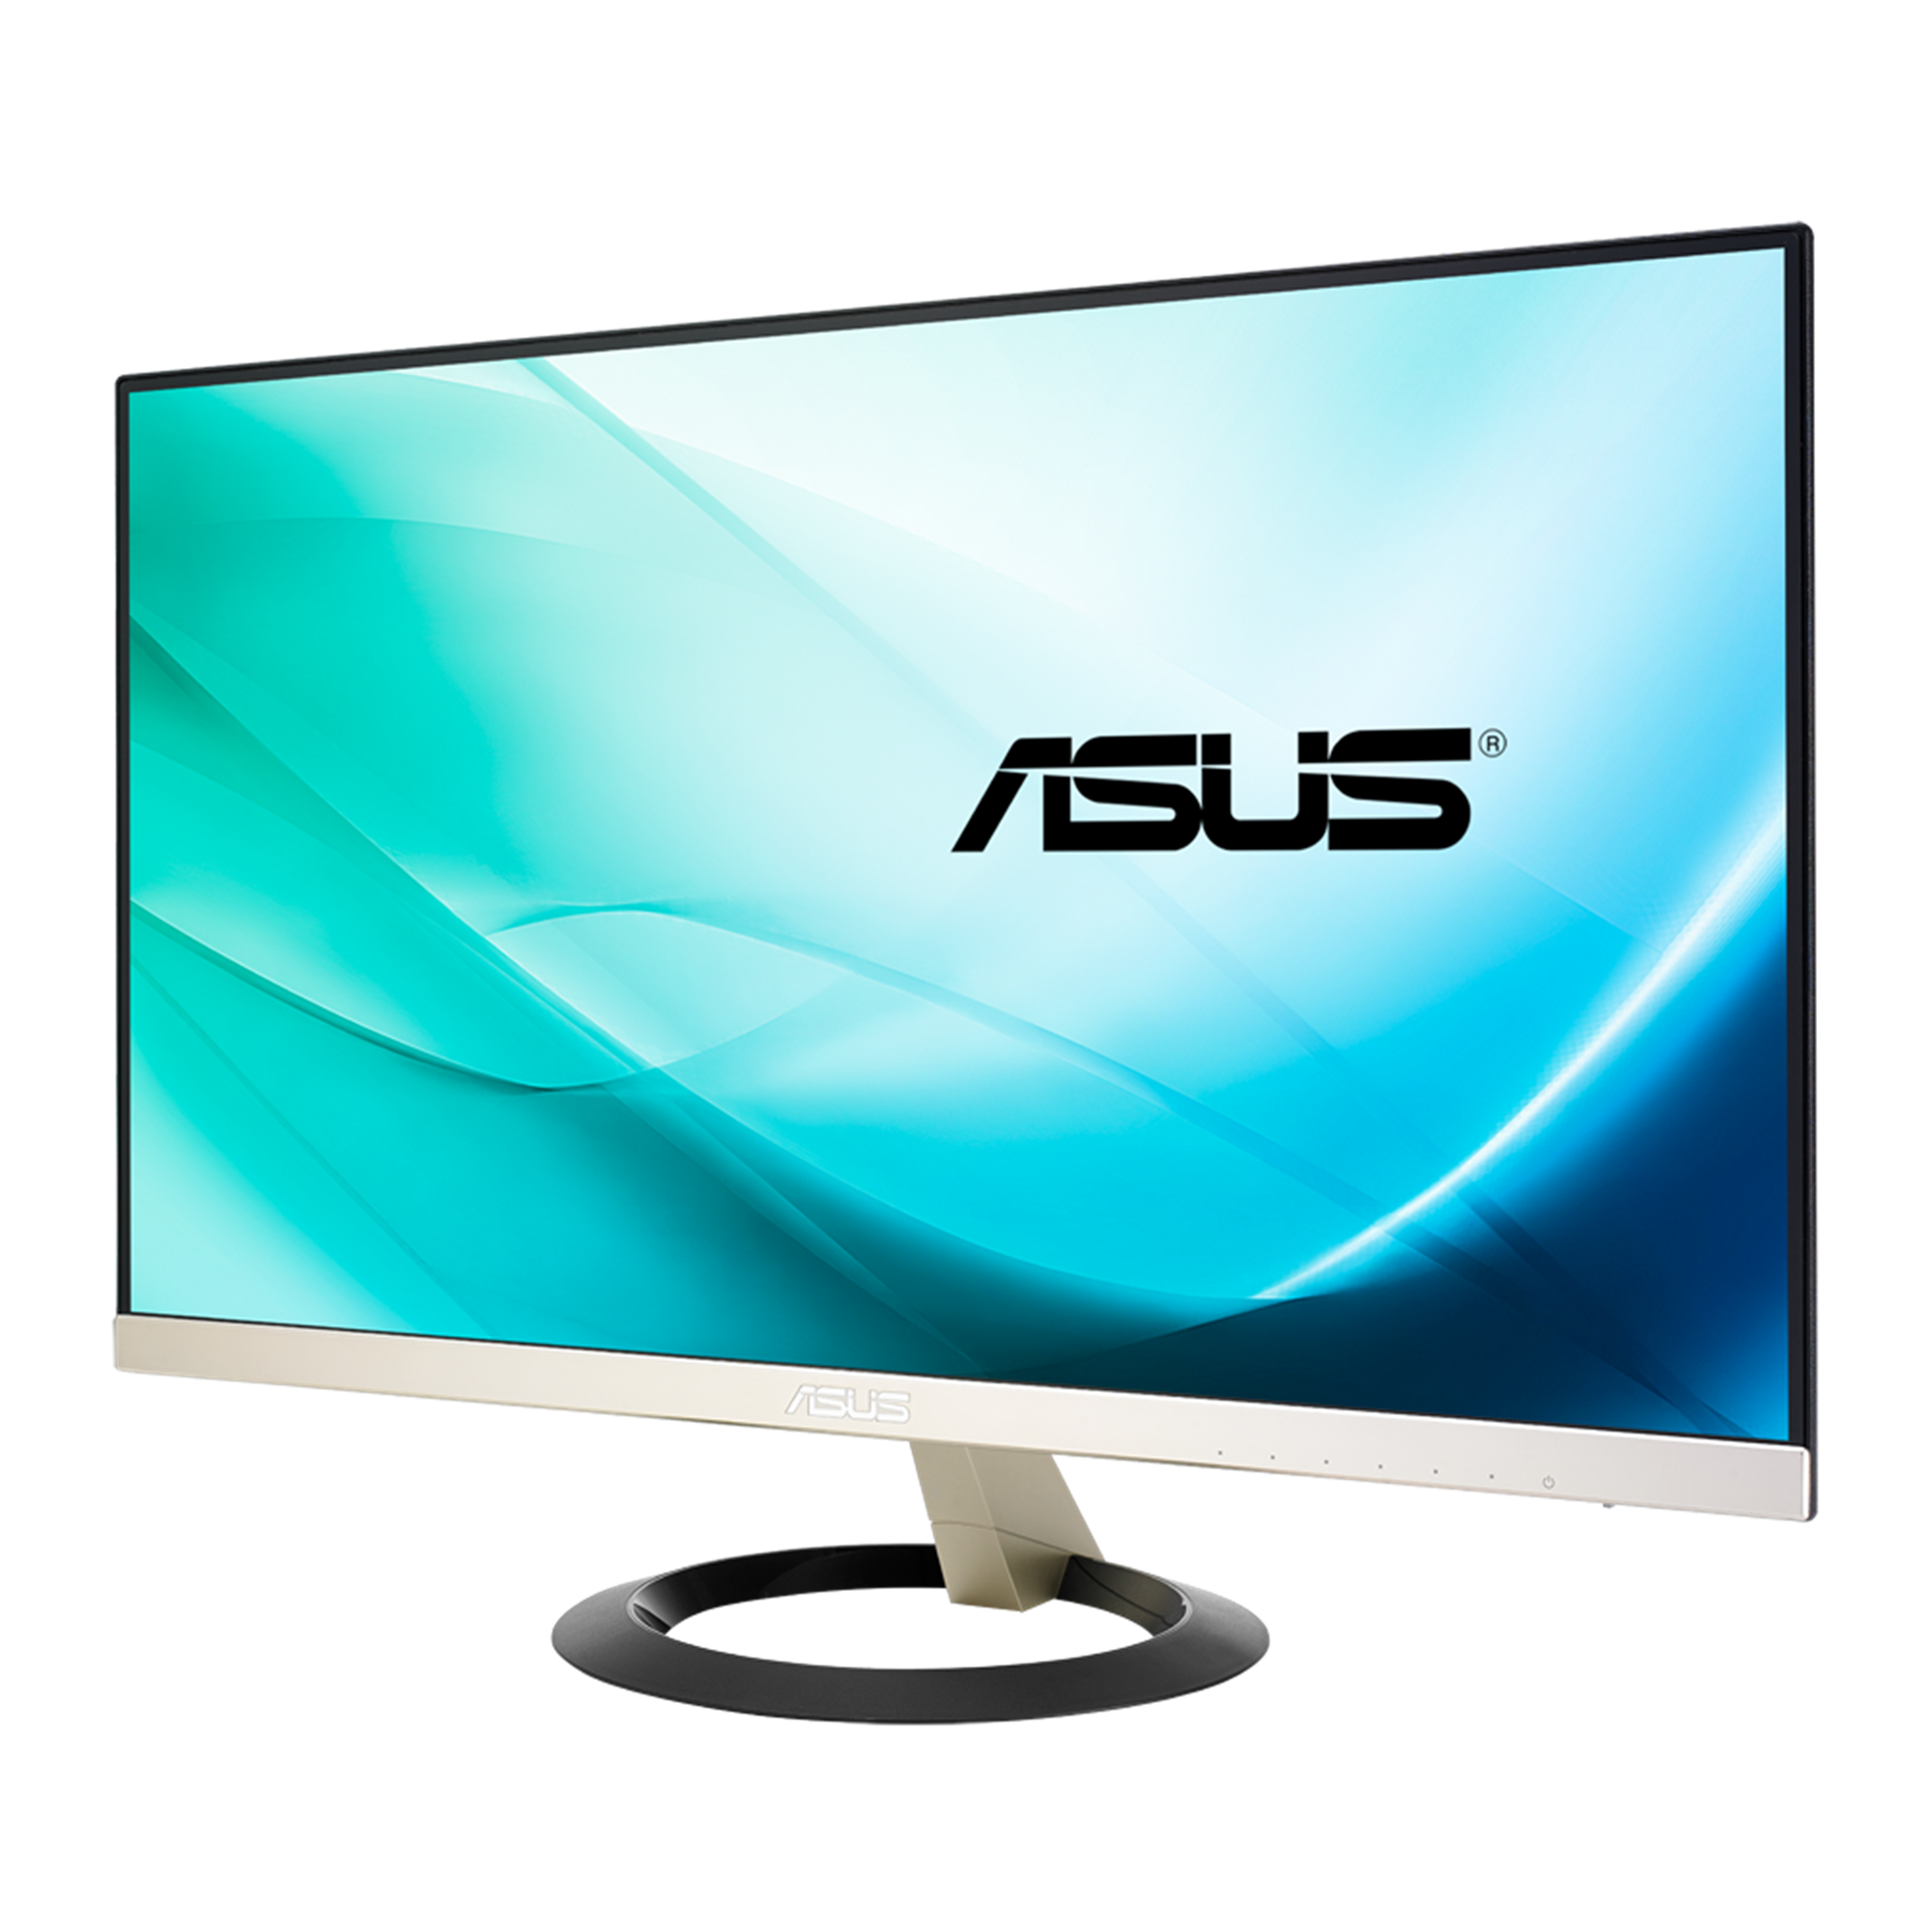 ASUS VZ249H フレームレスモニター 23.8インチ IPS液晶PC/タブレット